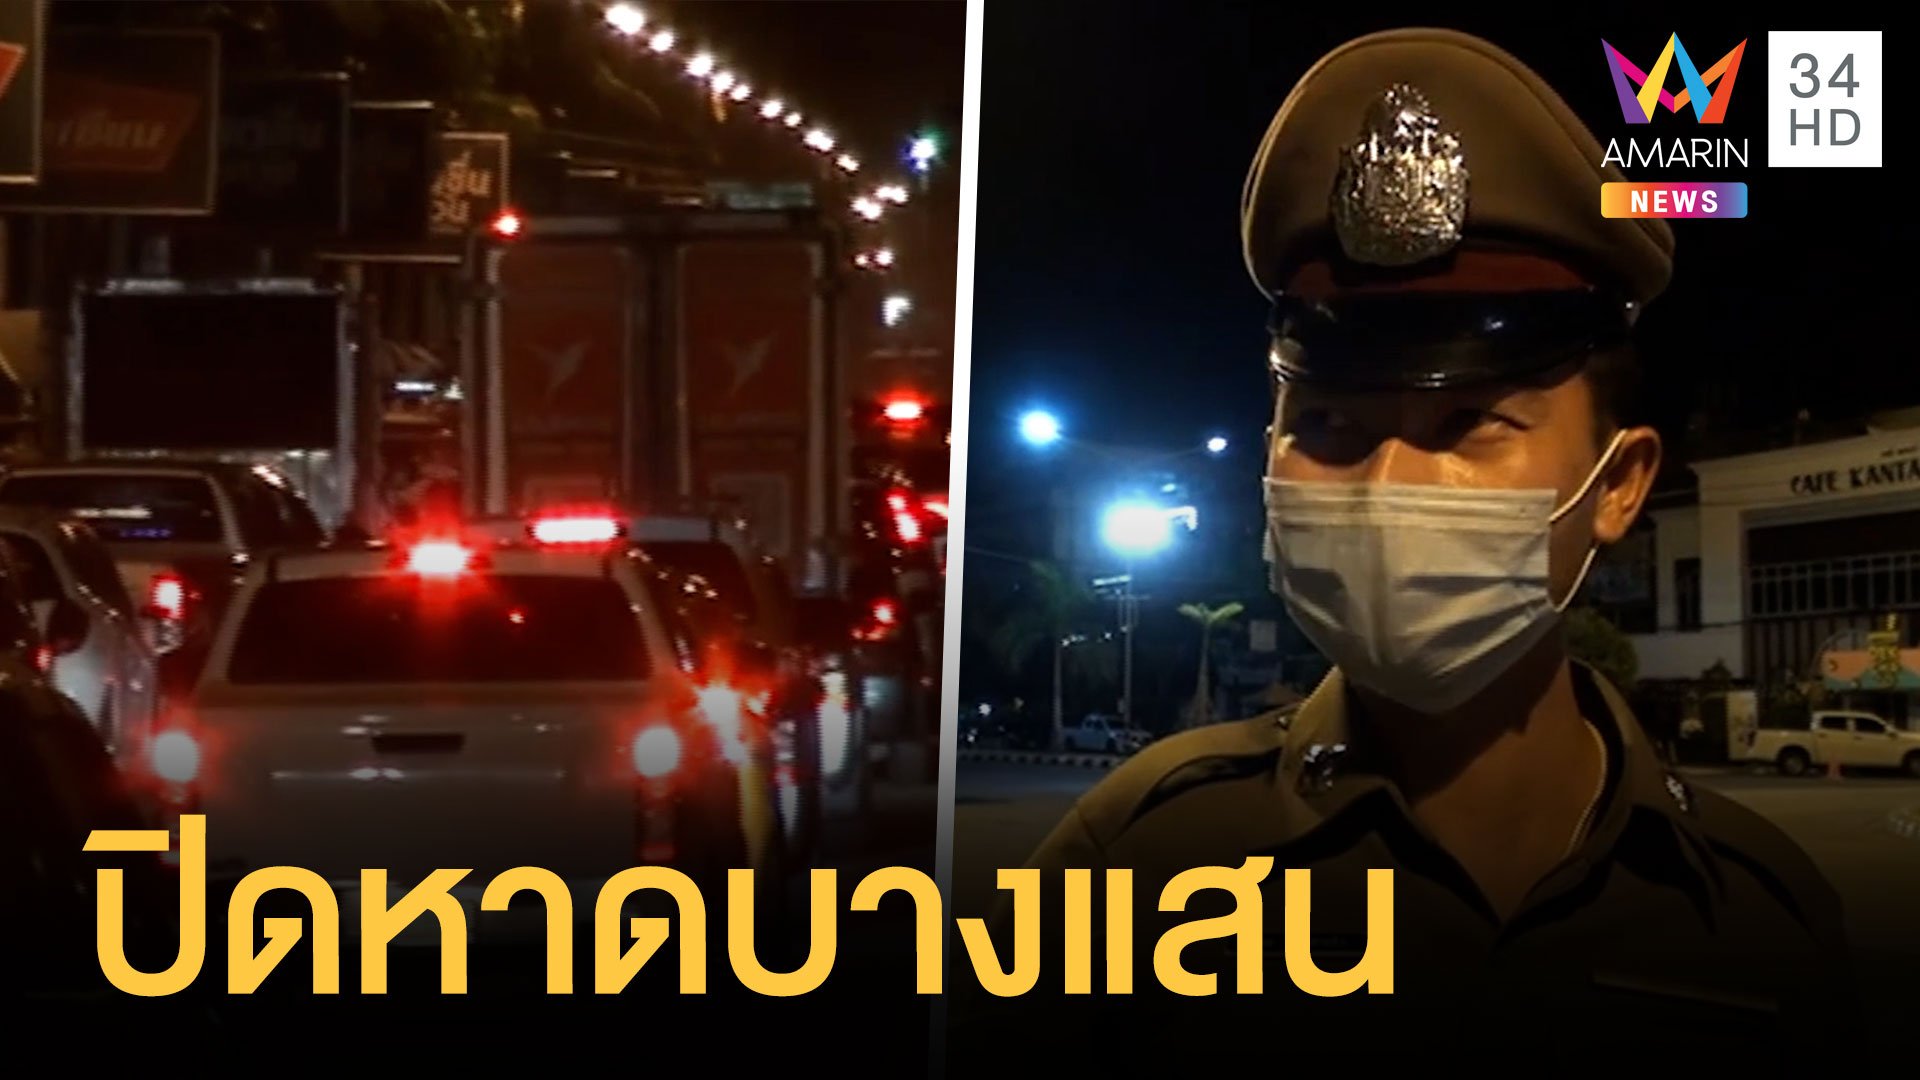 รถซิ่งนัดรวมตัวบางแสน ผู้ว่าฯ ชลบุรีสั่งปิดแล้ว | ข่าวอรุณอมรินทร์ | 27 มิ.ย. 64 | AMARIN TVHD34